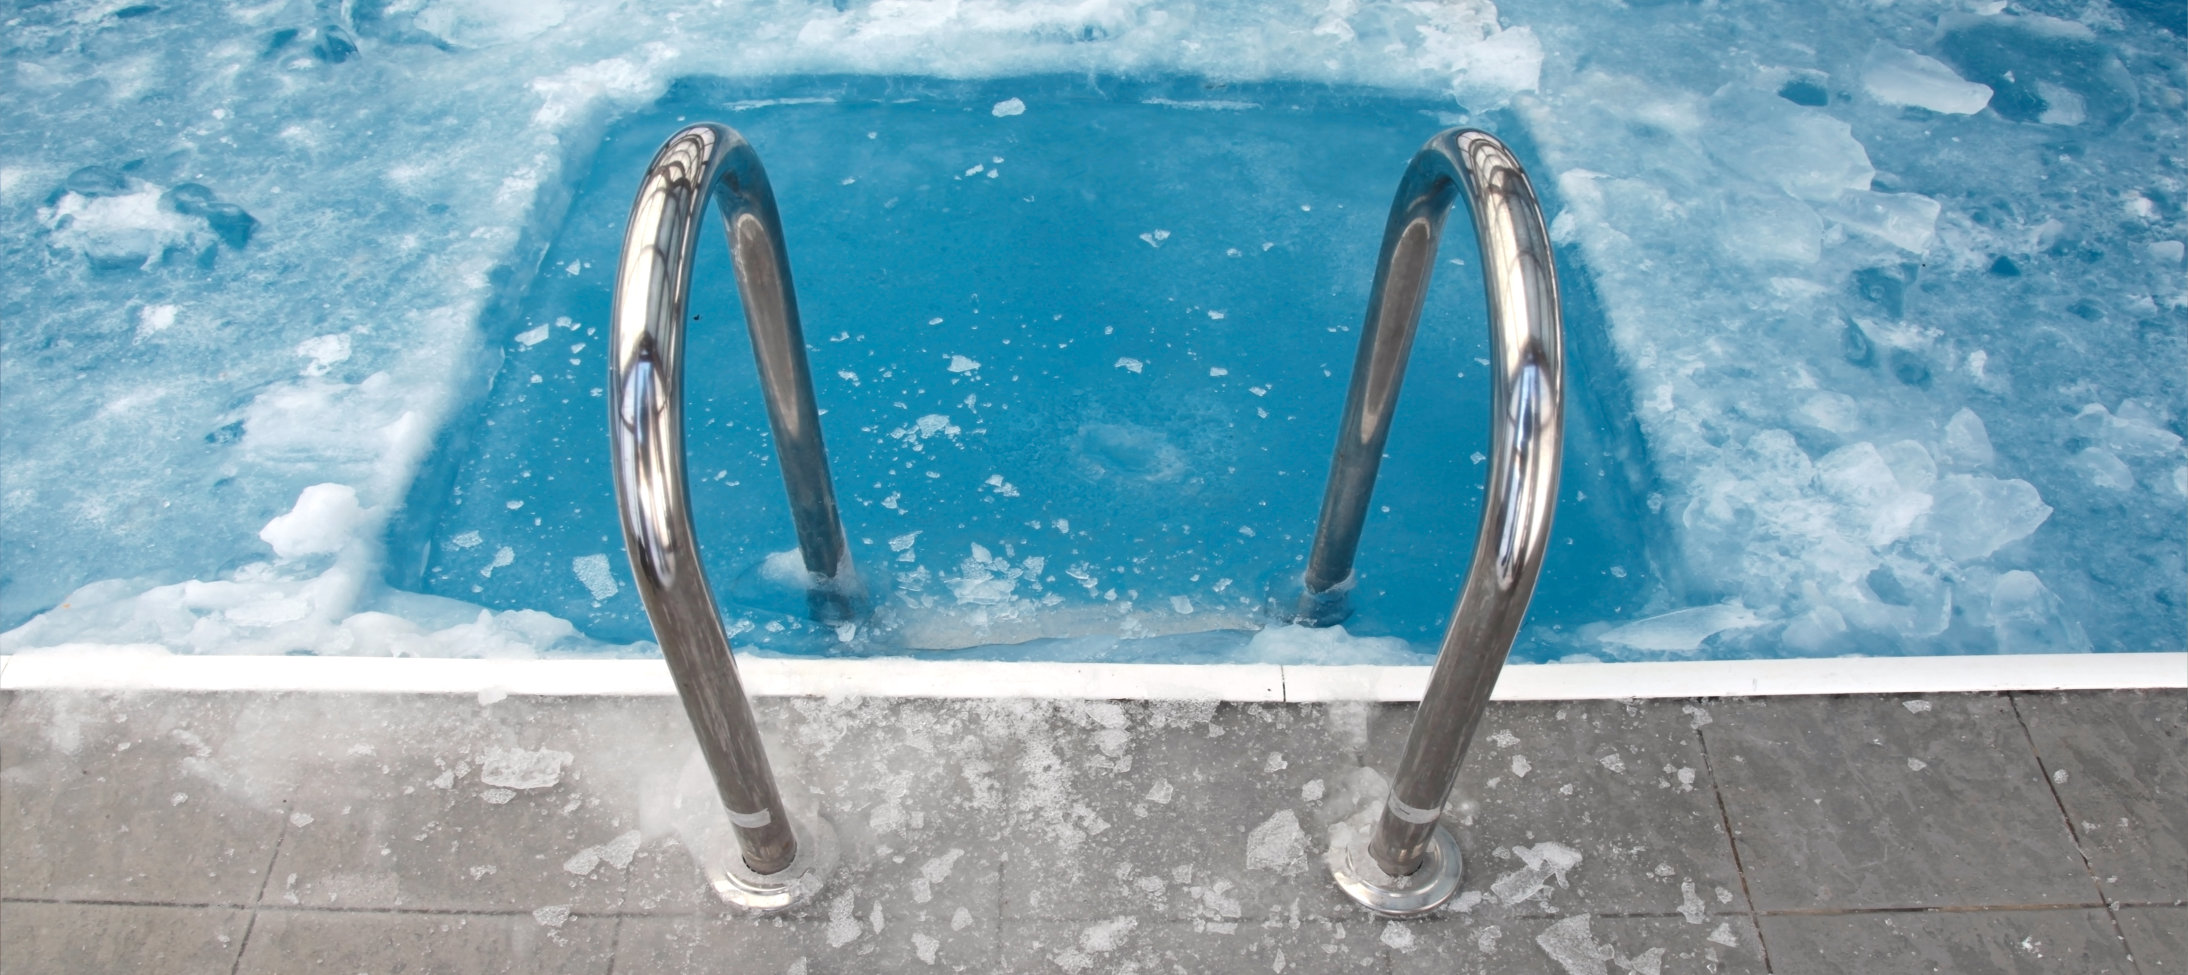 4 dicas para manter as vendas da loja de piscinas no inverno